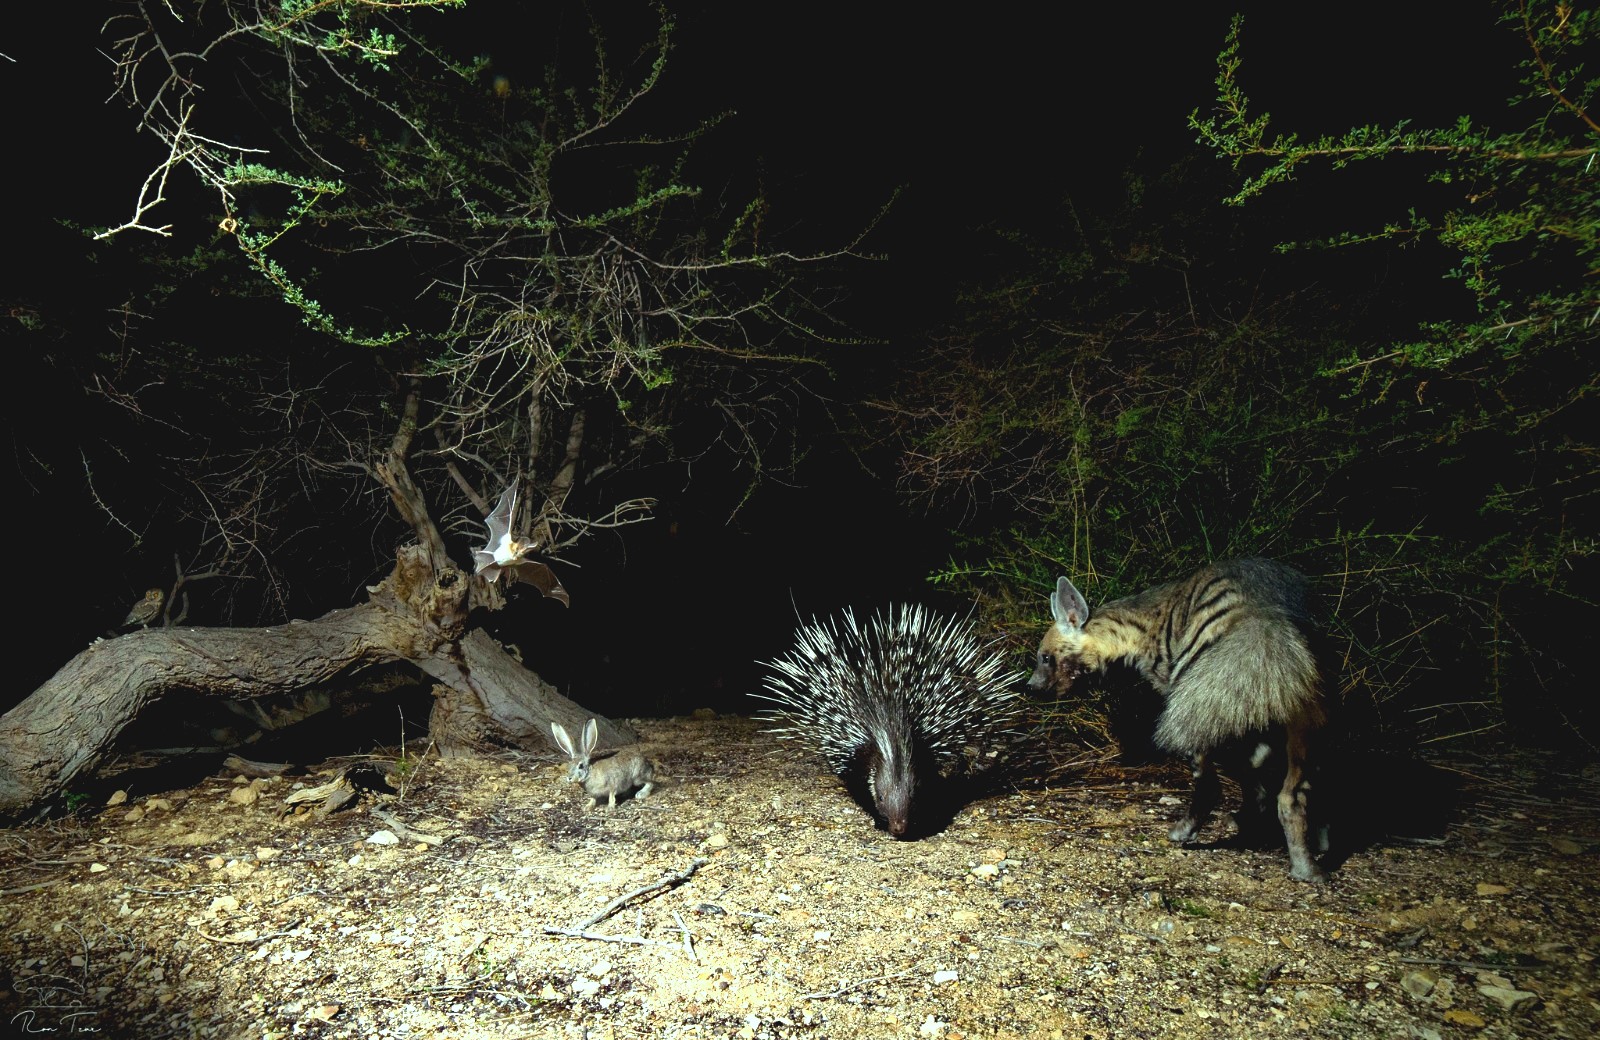 פרויקט צילום במצלמות שטח מתקדמות תיעד את פעילות חיות הבר  בלילות בלב המדבר בערבה התיכונה – עם רדת הטמפרטורות והחשכה